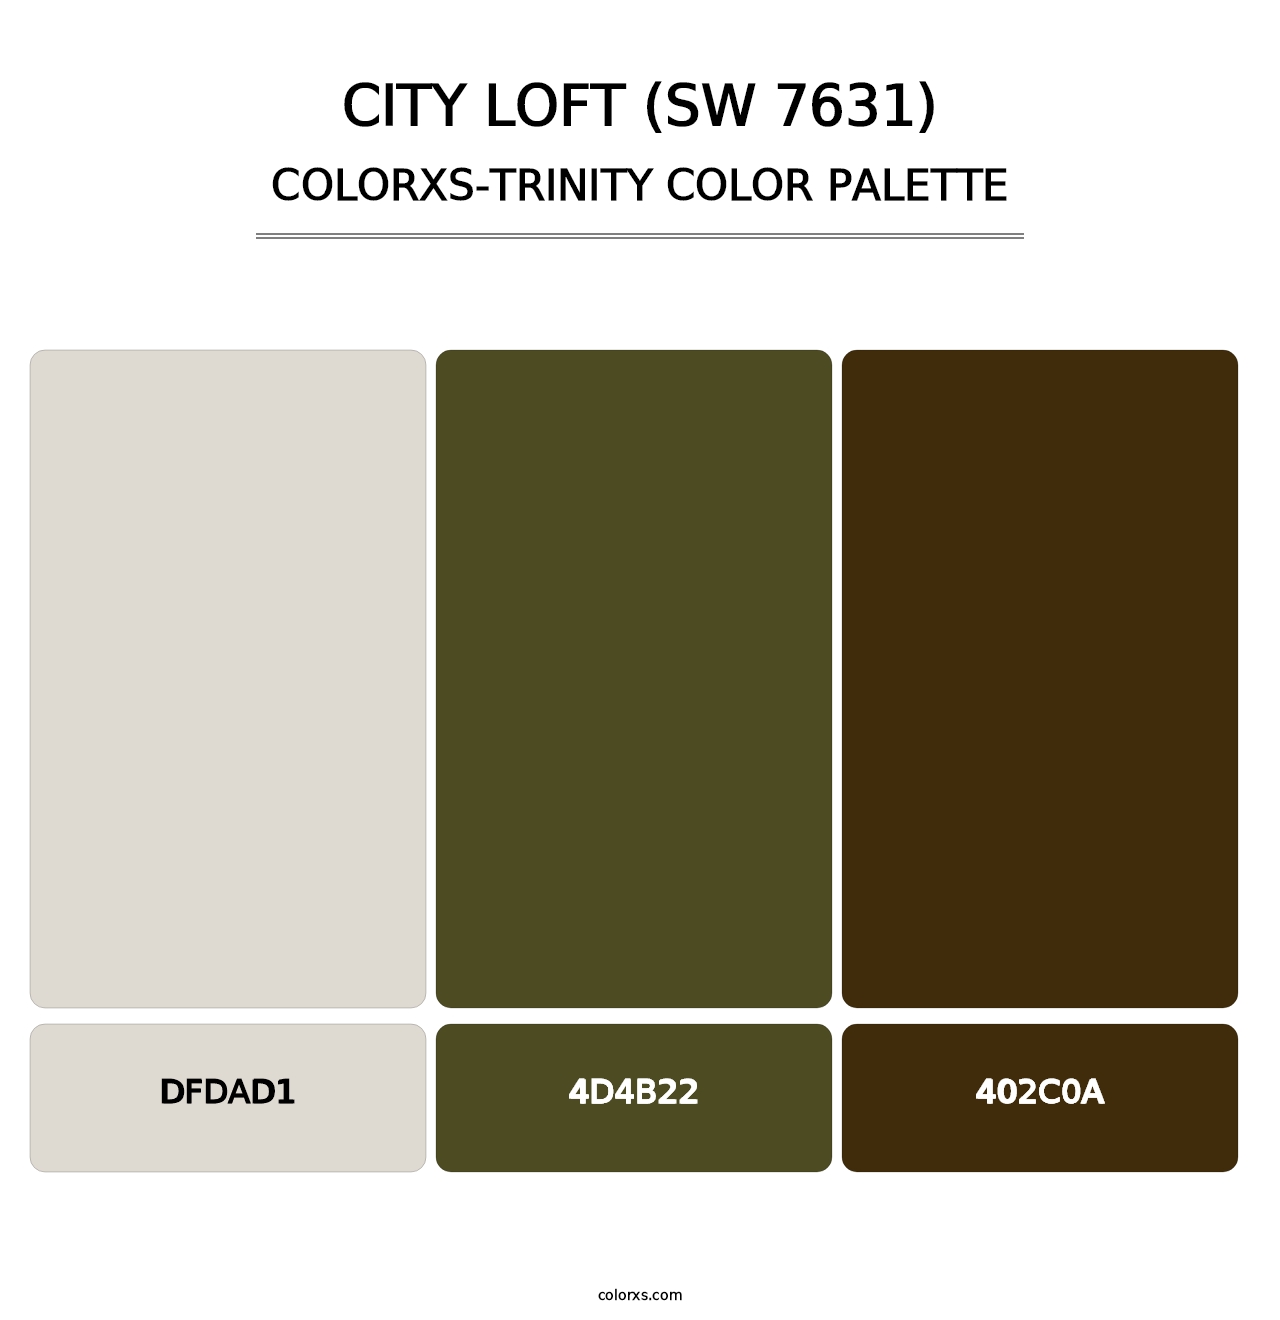 City Loft (SW 7631) - Colorxs Trinity Palette